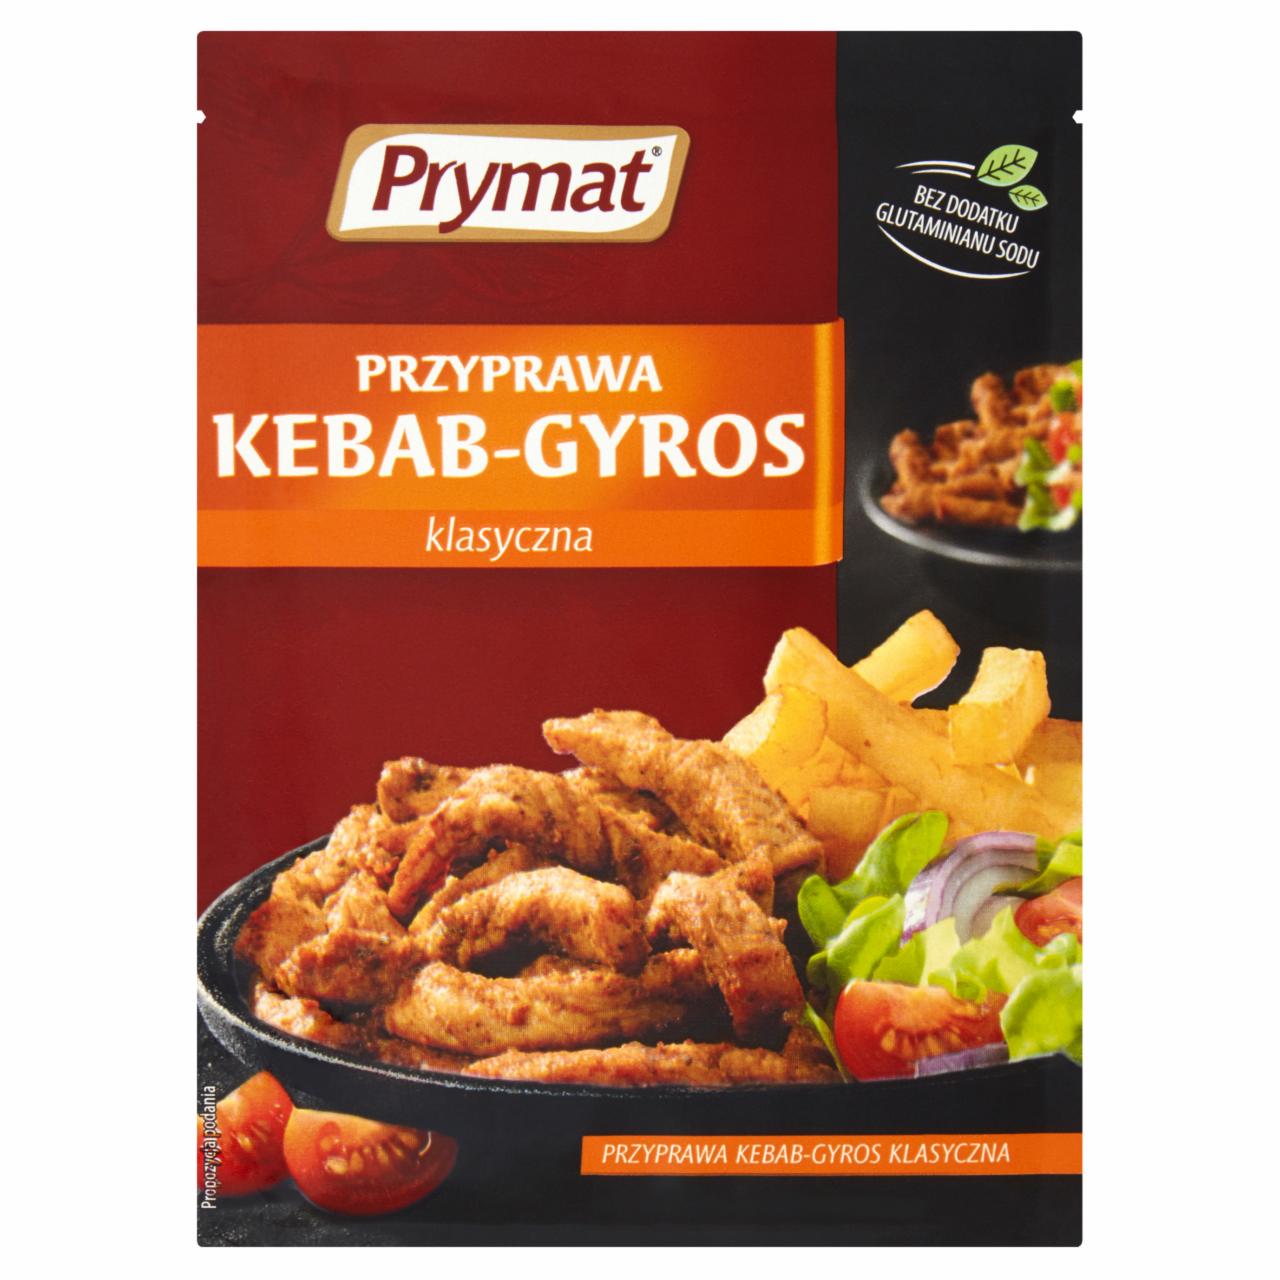 Zdjęcia - Prymat Przyprawa kebab-gyros klasyczna 30 g